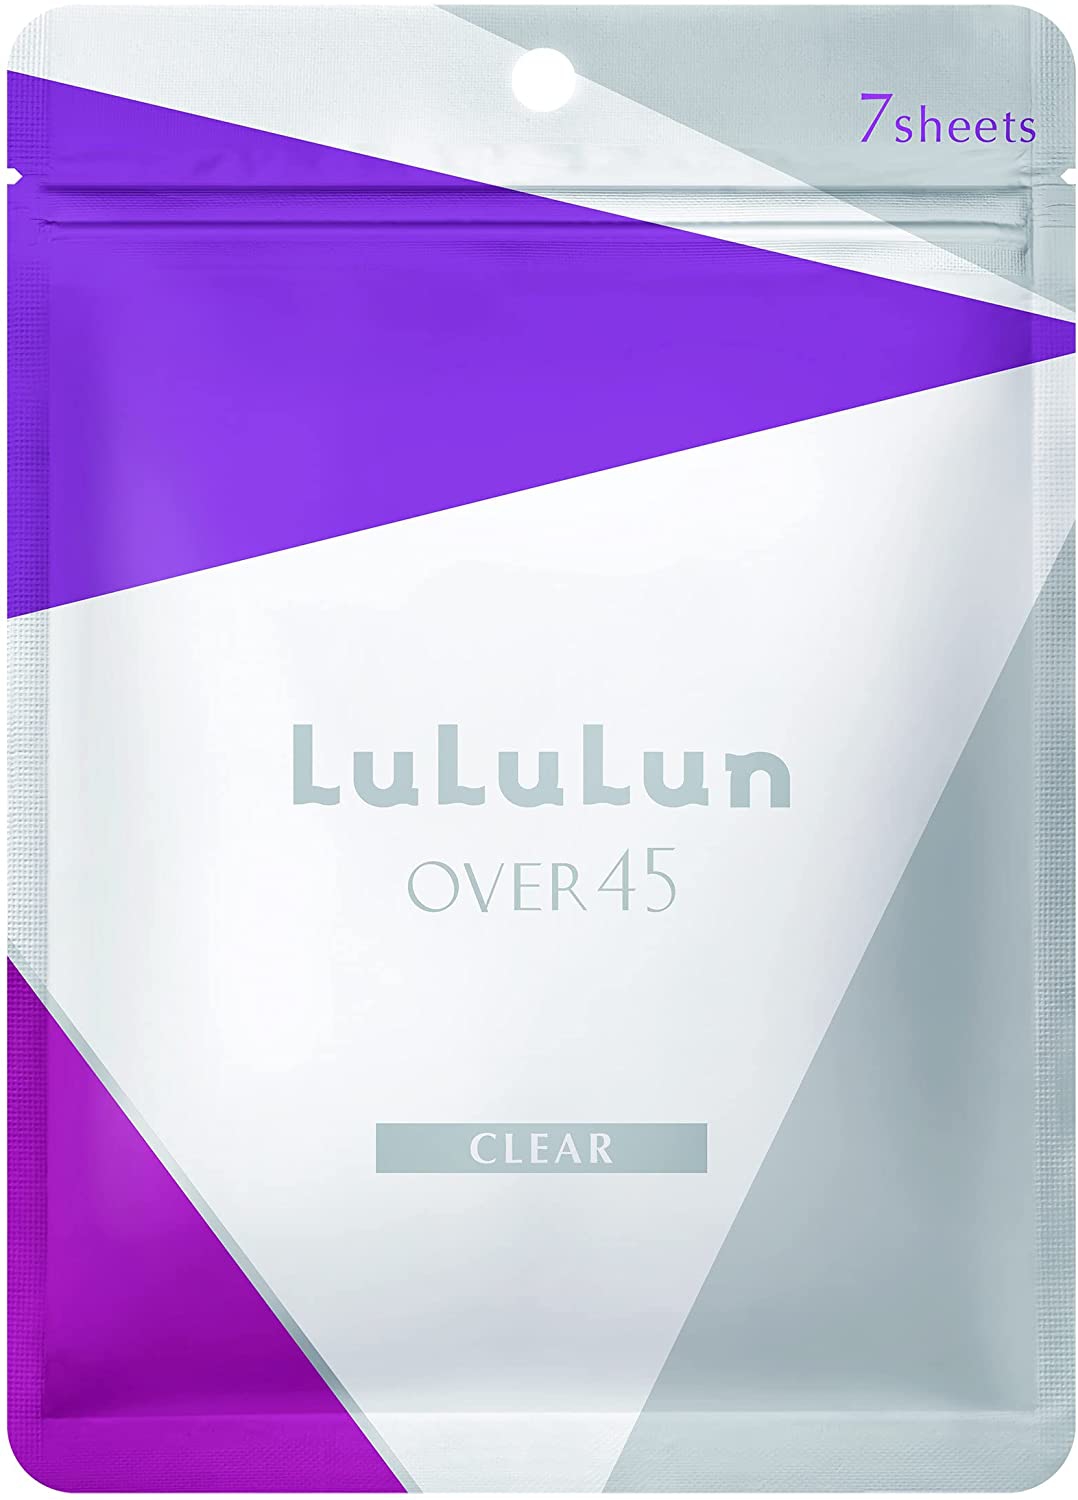 LuLuLun(ルルルン) Over45 アイリスブルー(クリア)の商品画像1 